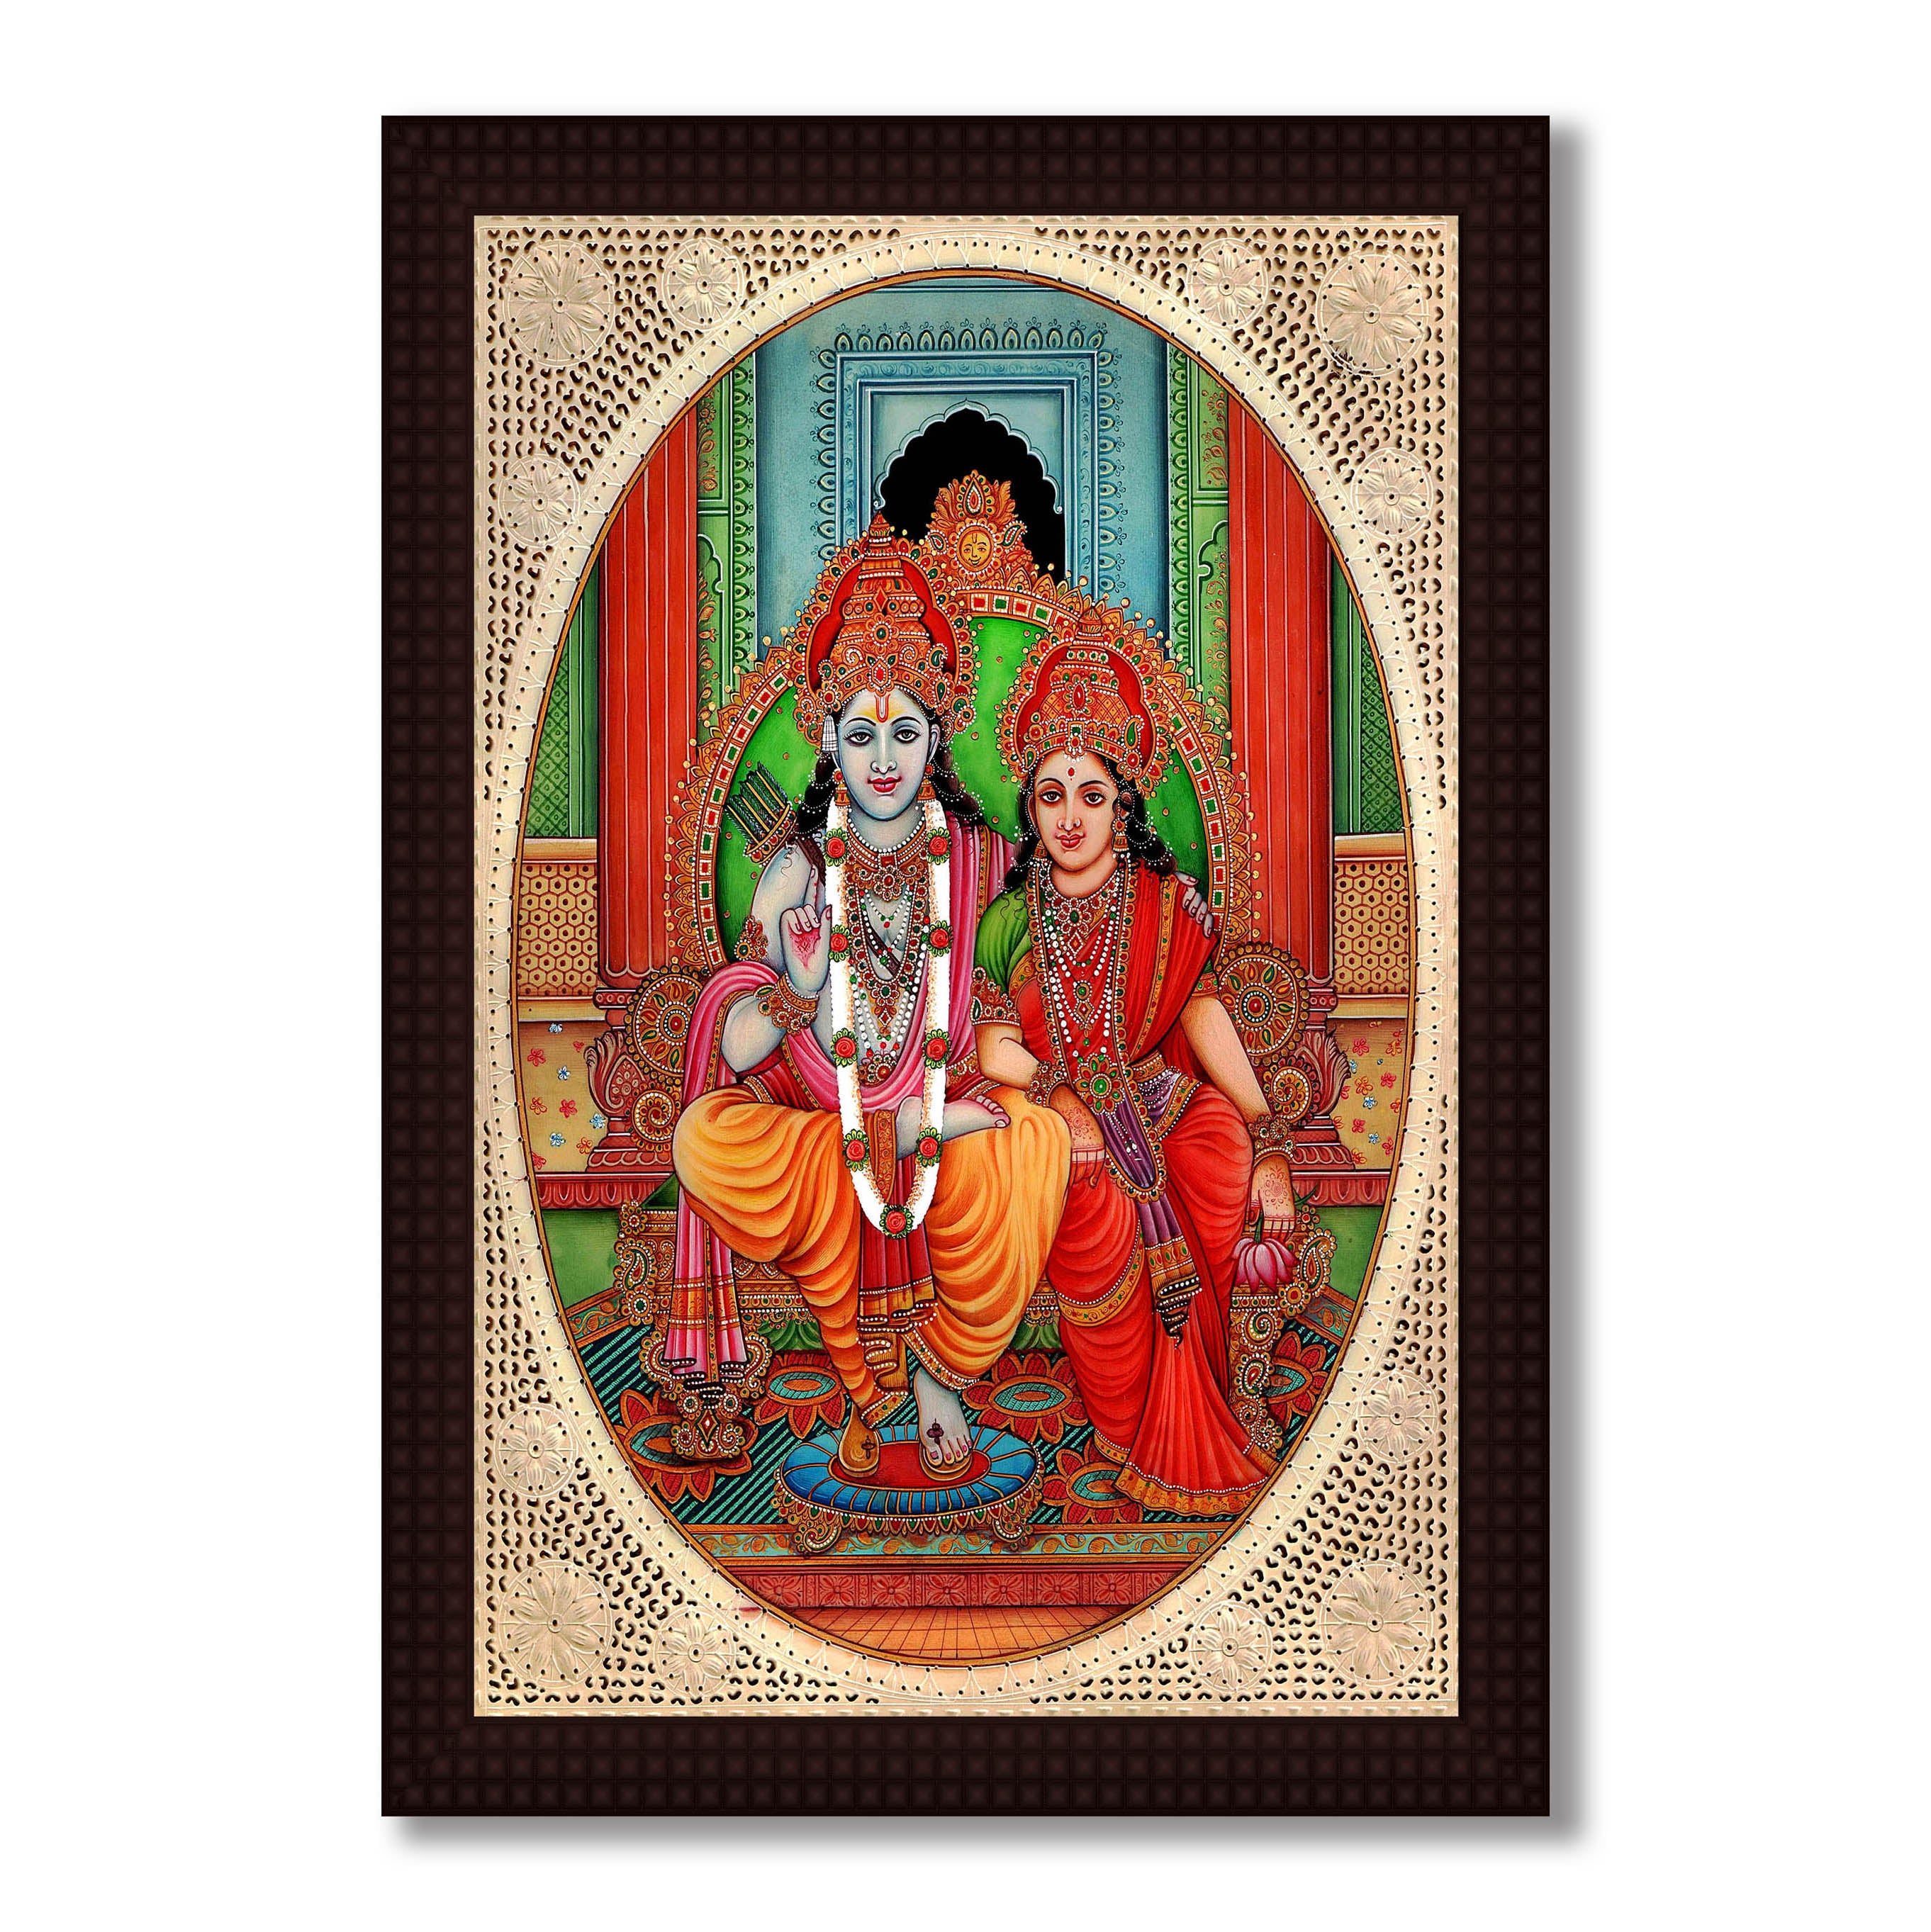 Lord Ram with Sita